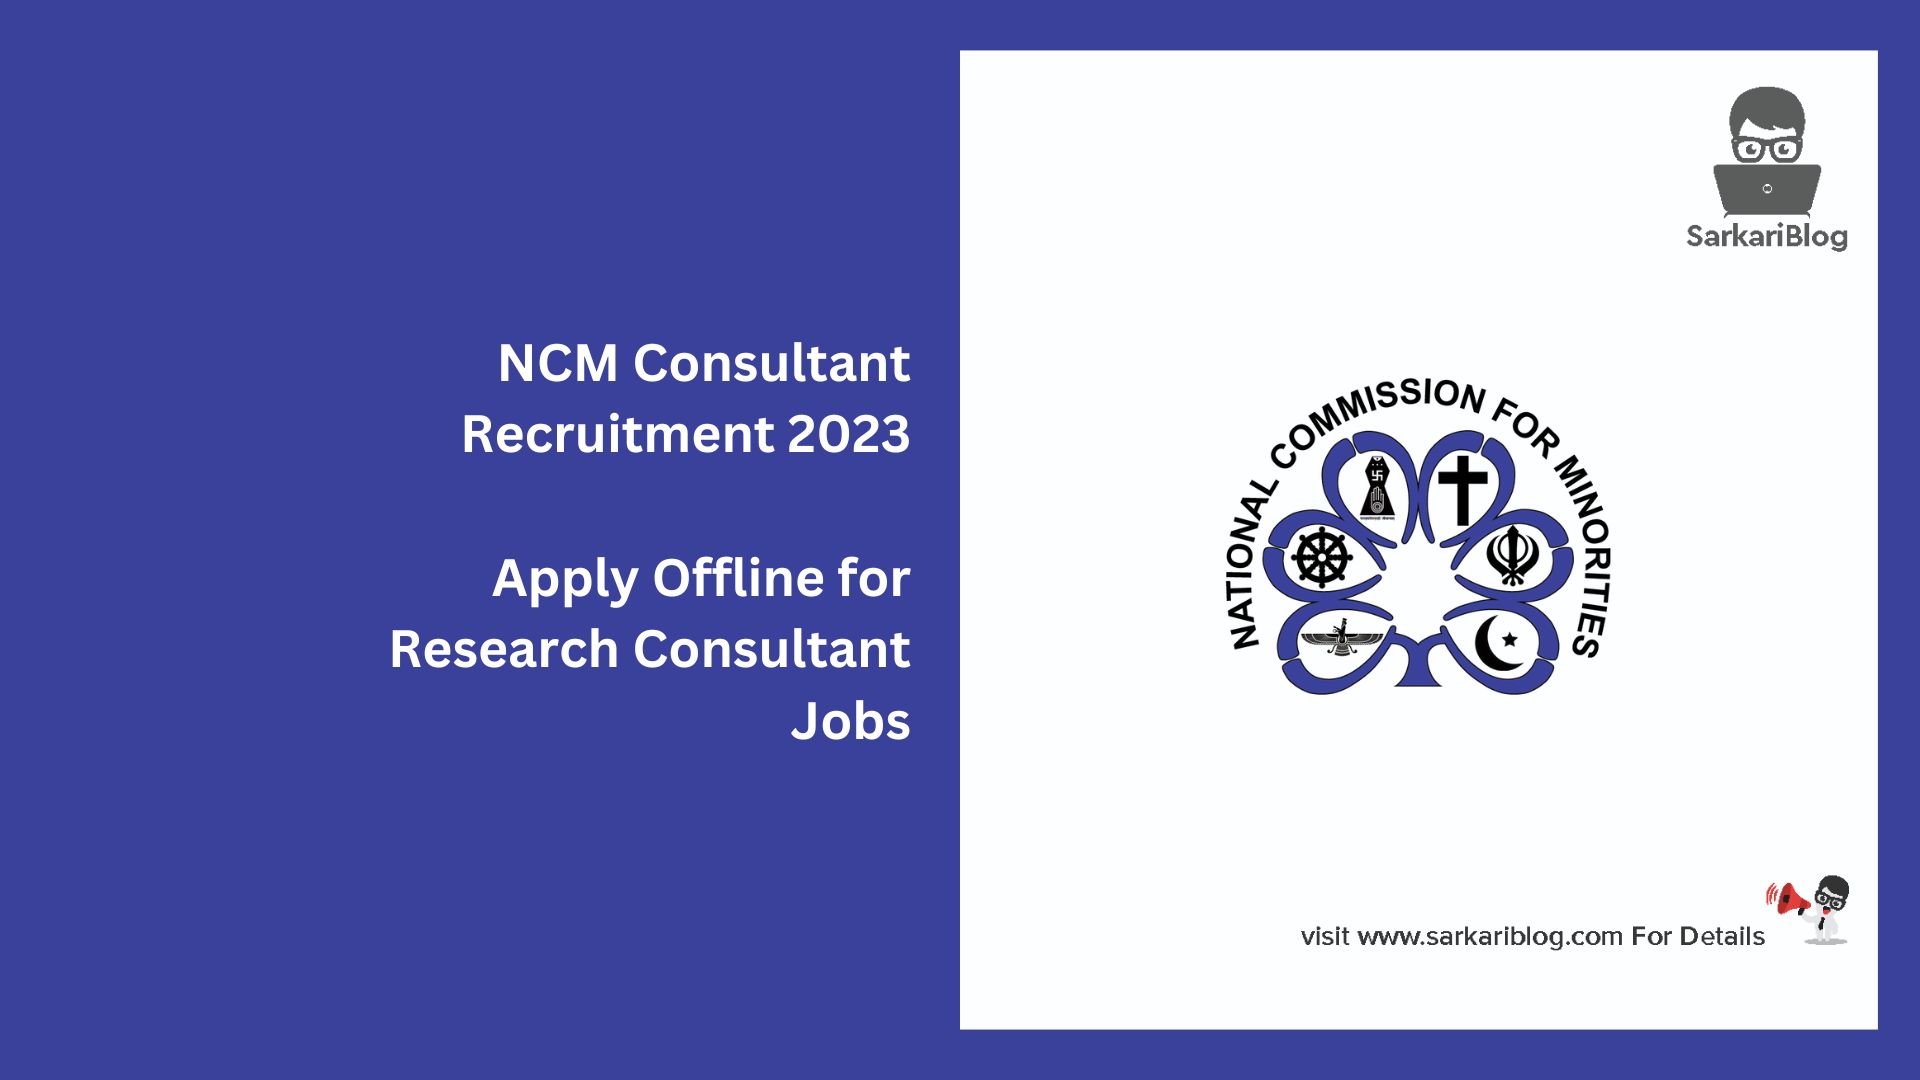 NCM Consultant Recruitment 2023